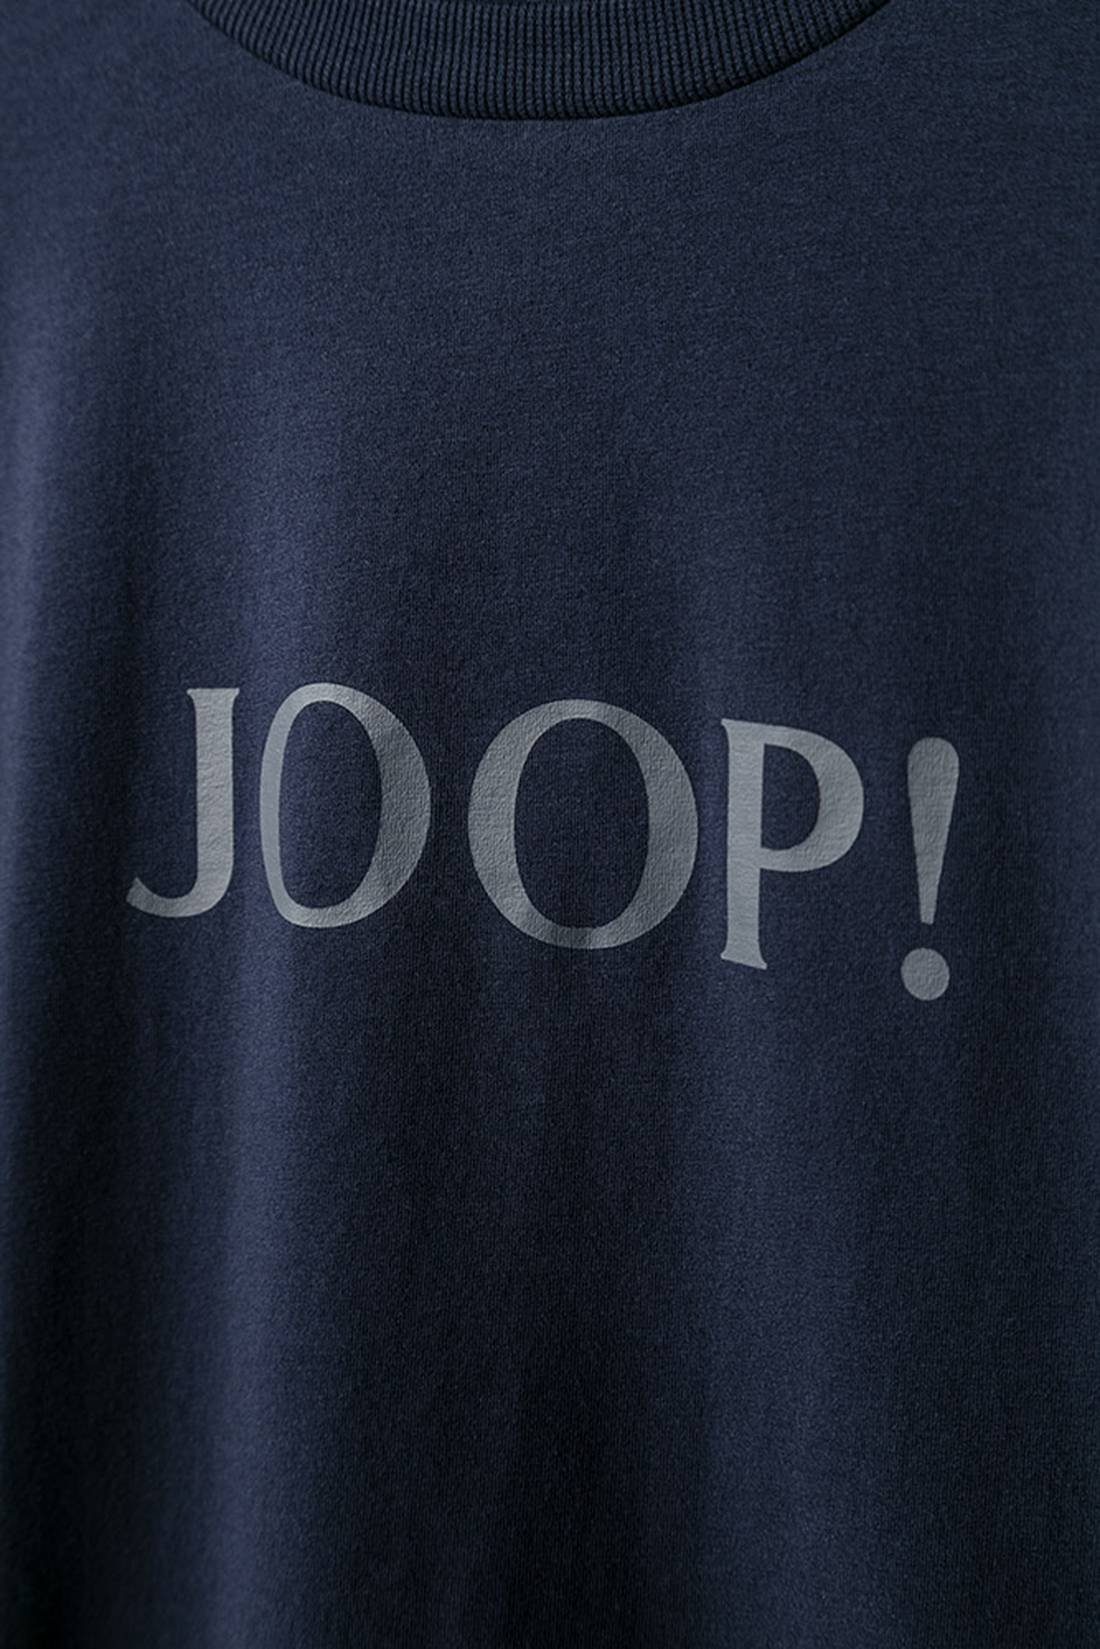 Langarm-Shirt Joop! - T-Shirt Blau Herren Loungewear, Rundhals